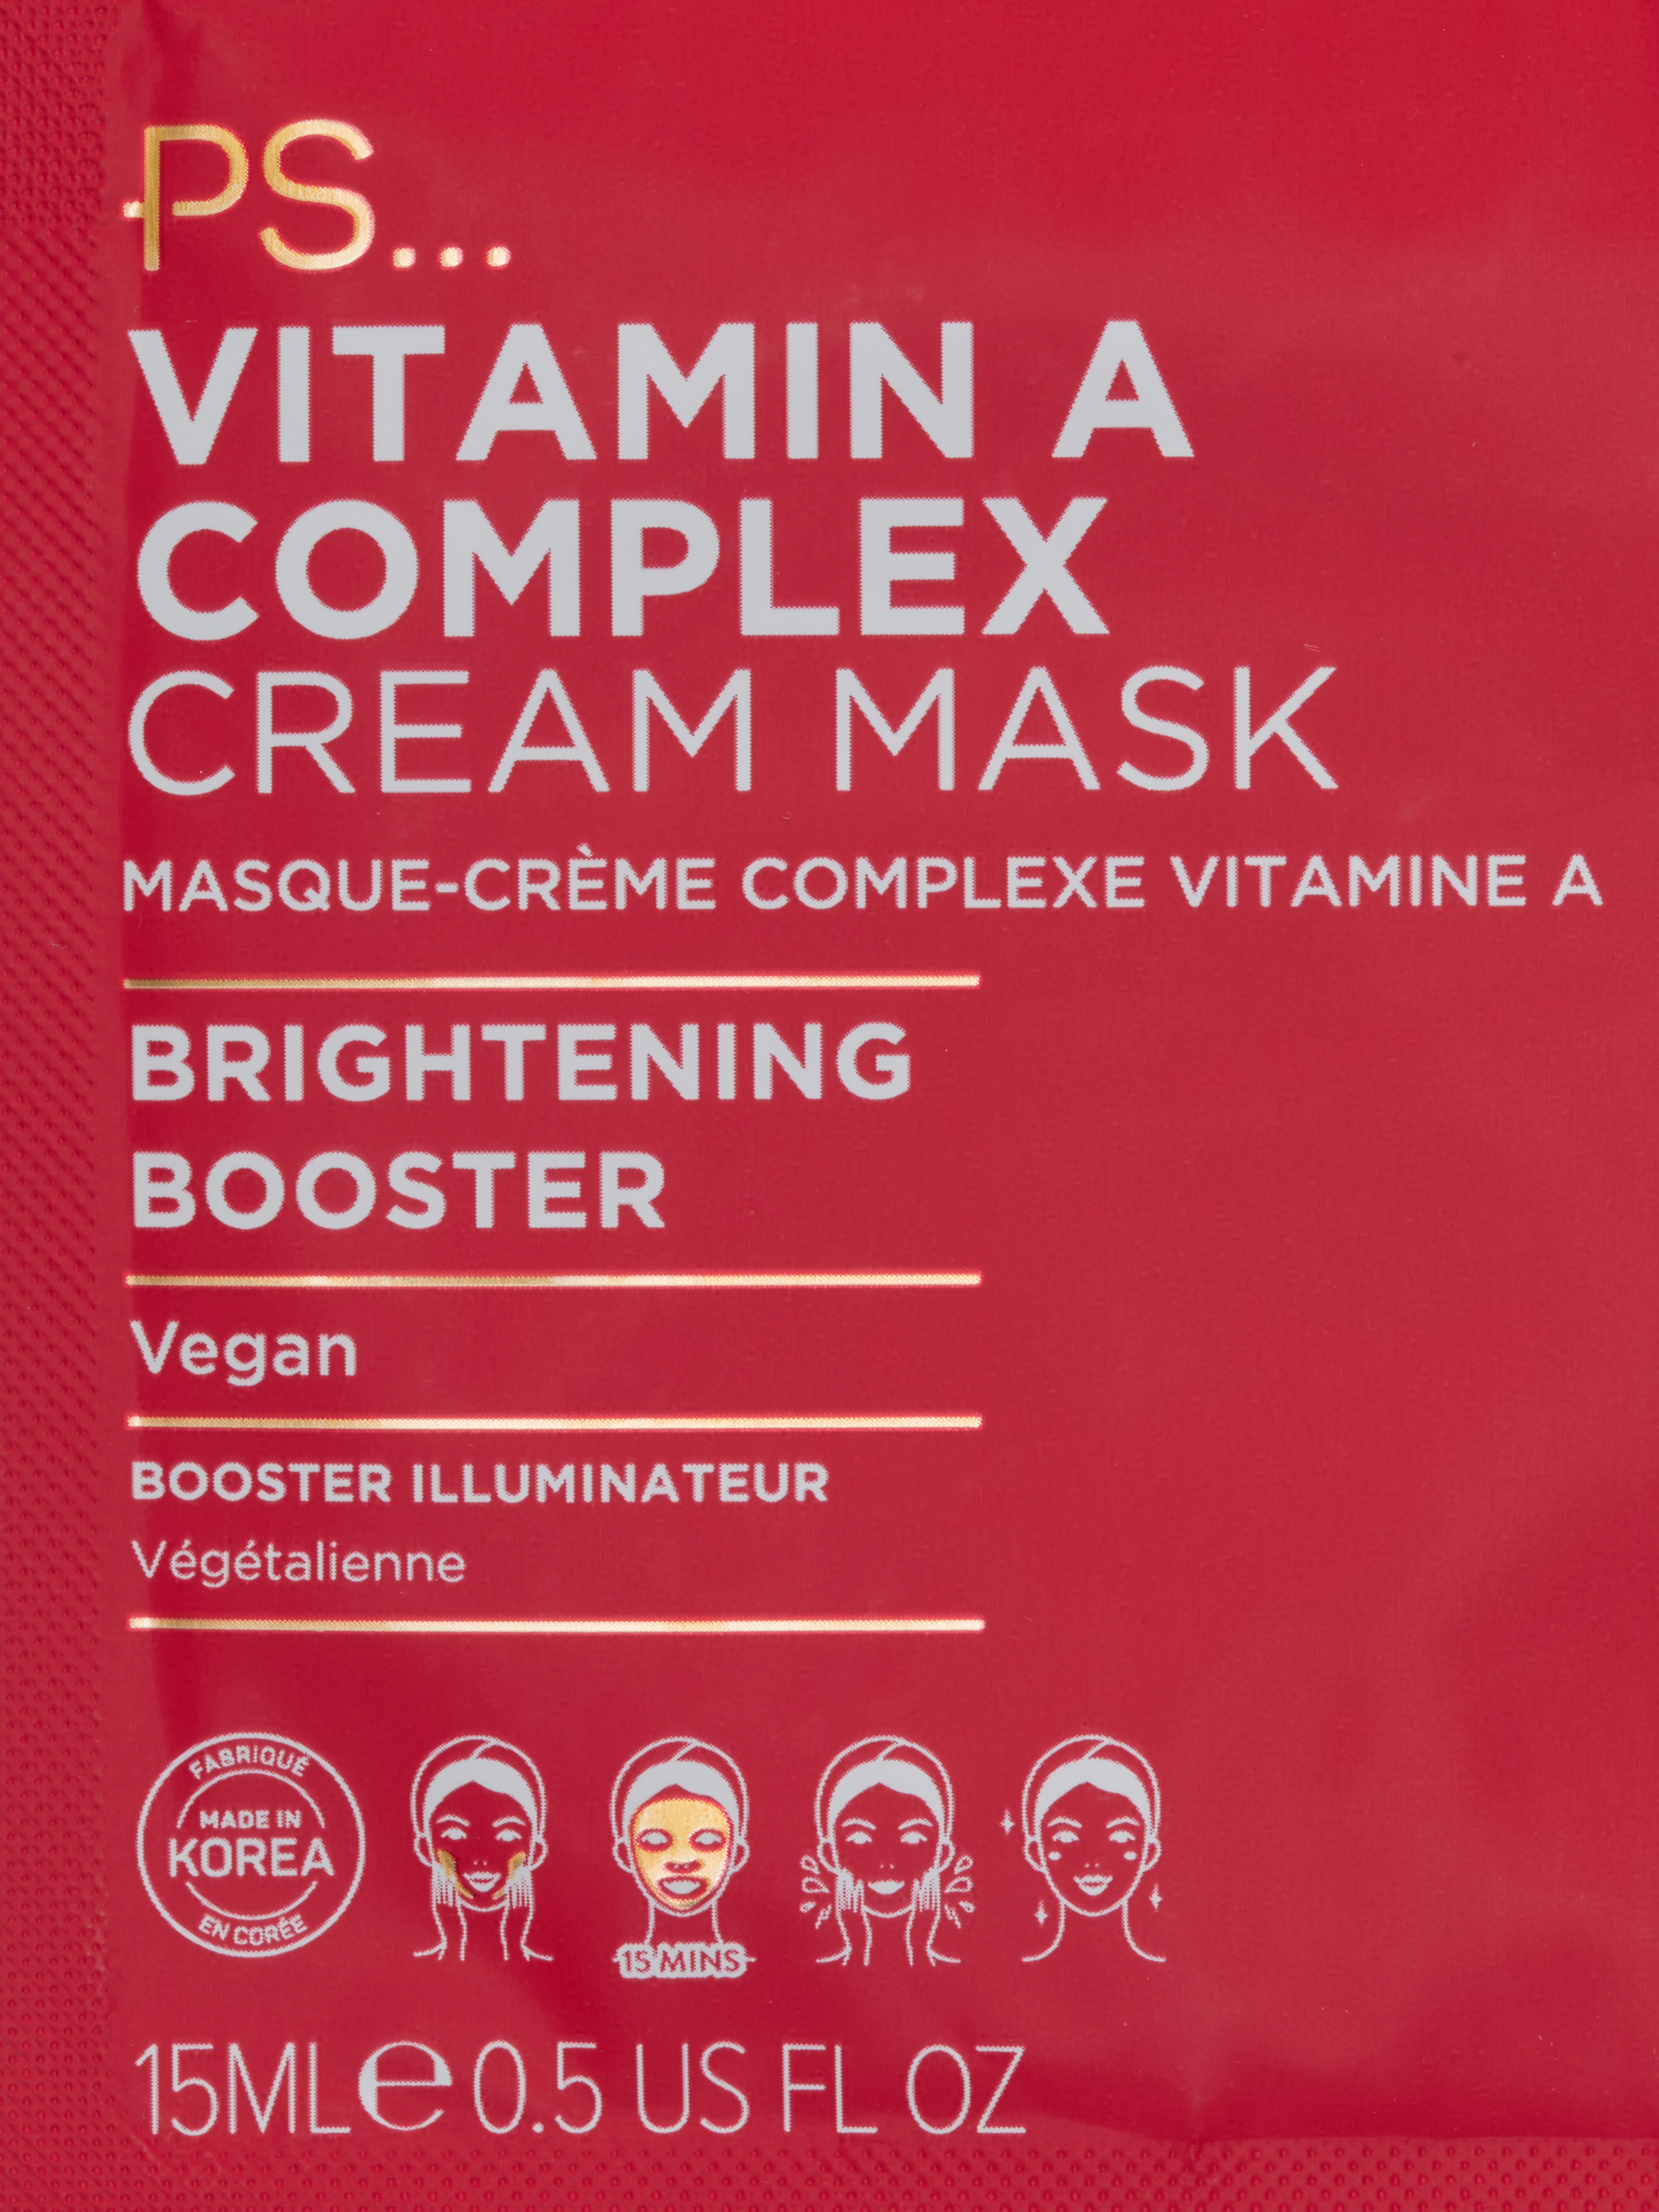 PS... Vitamin A Complex Cream Mask